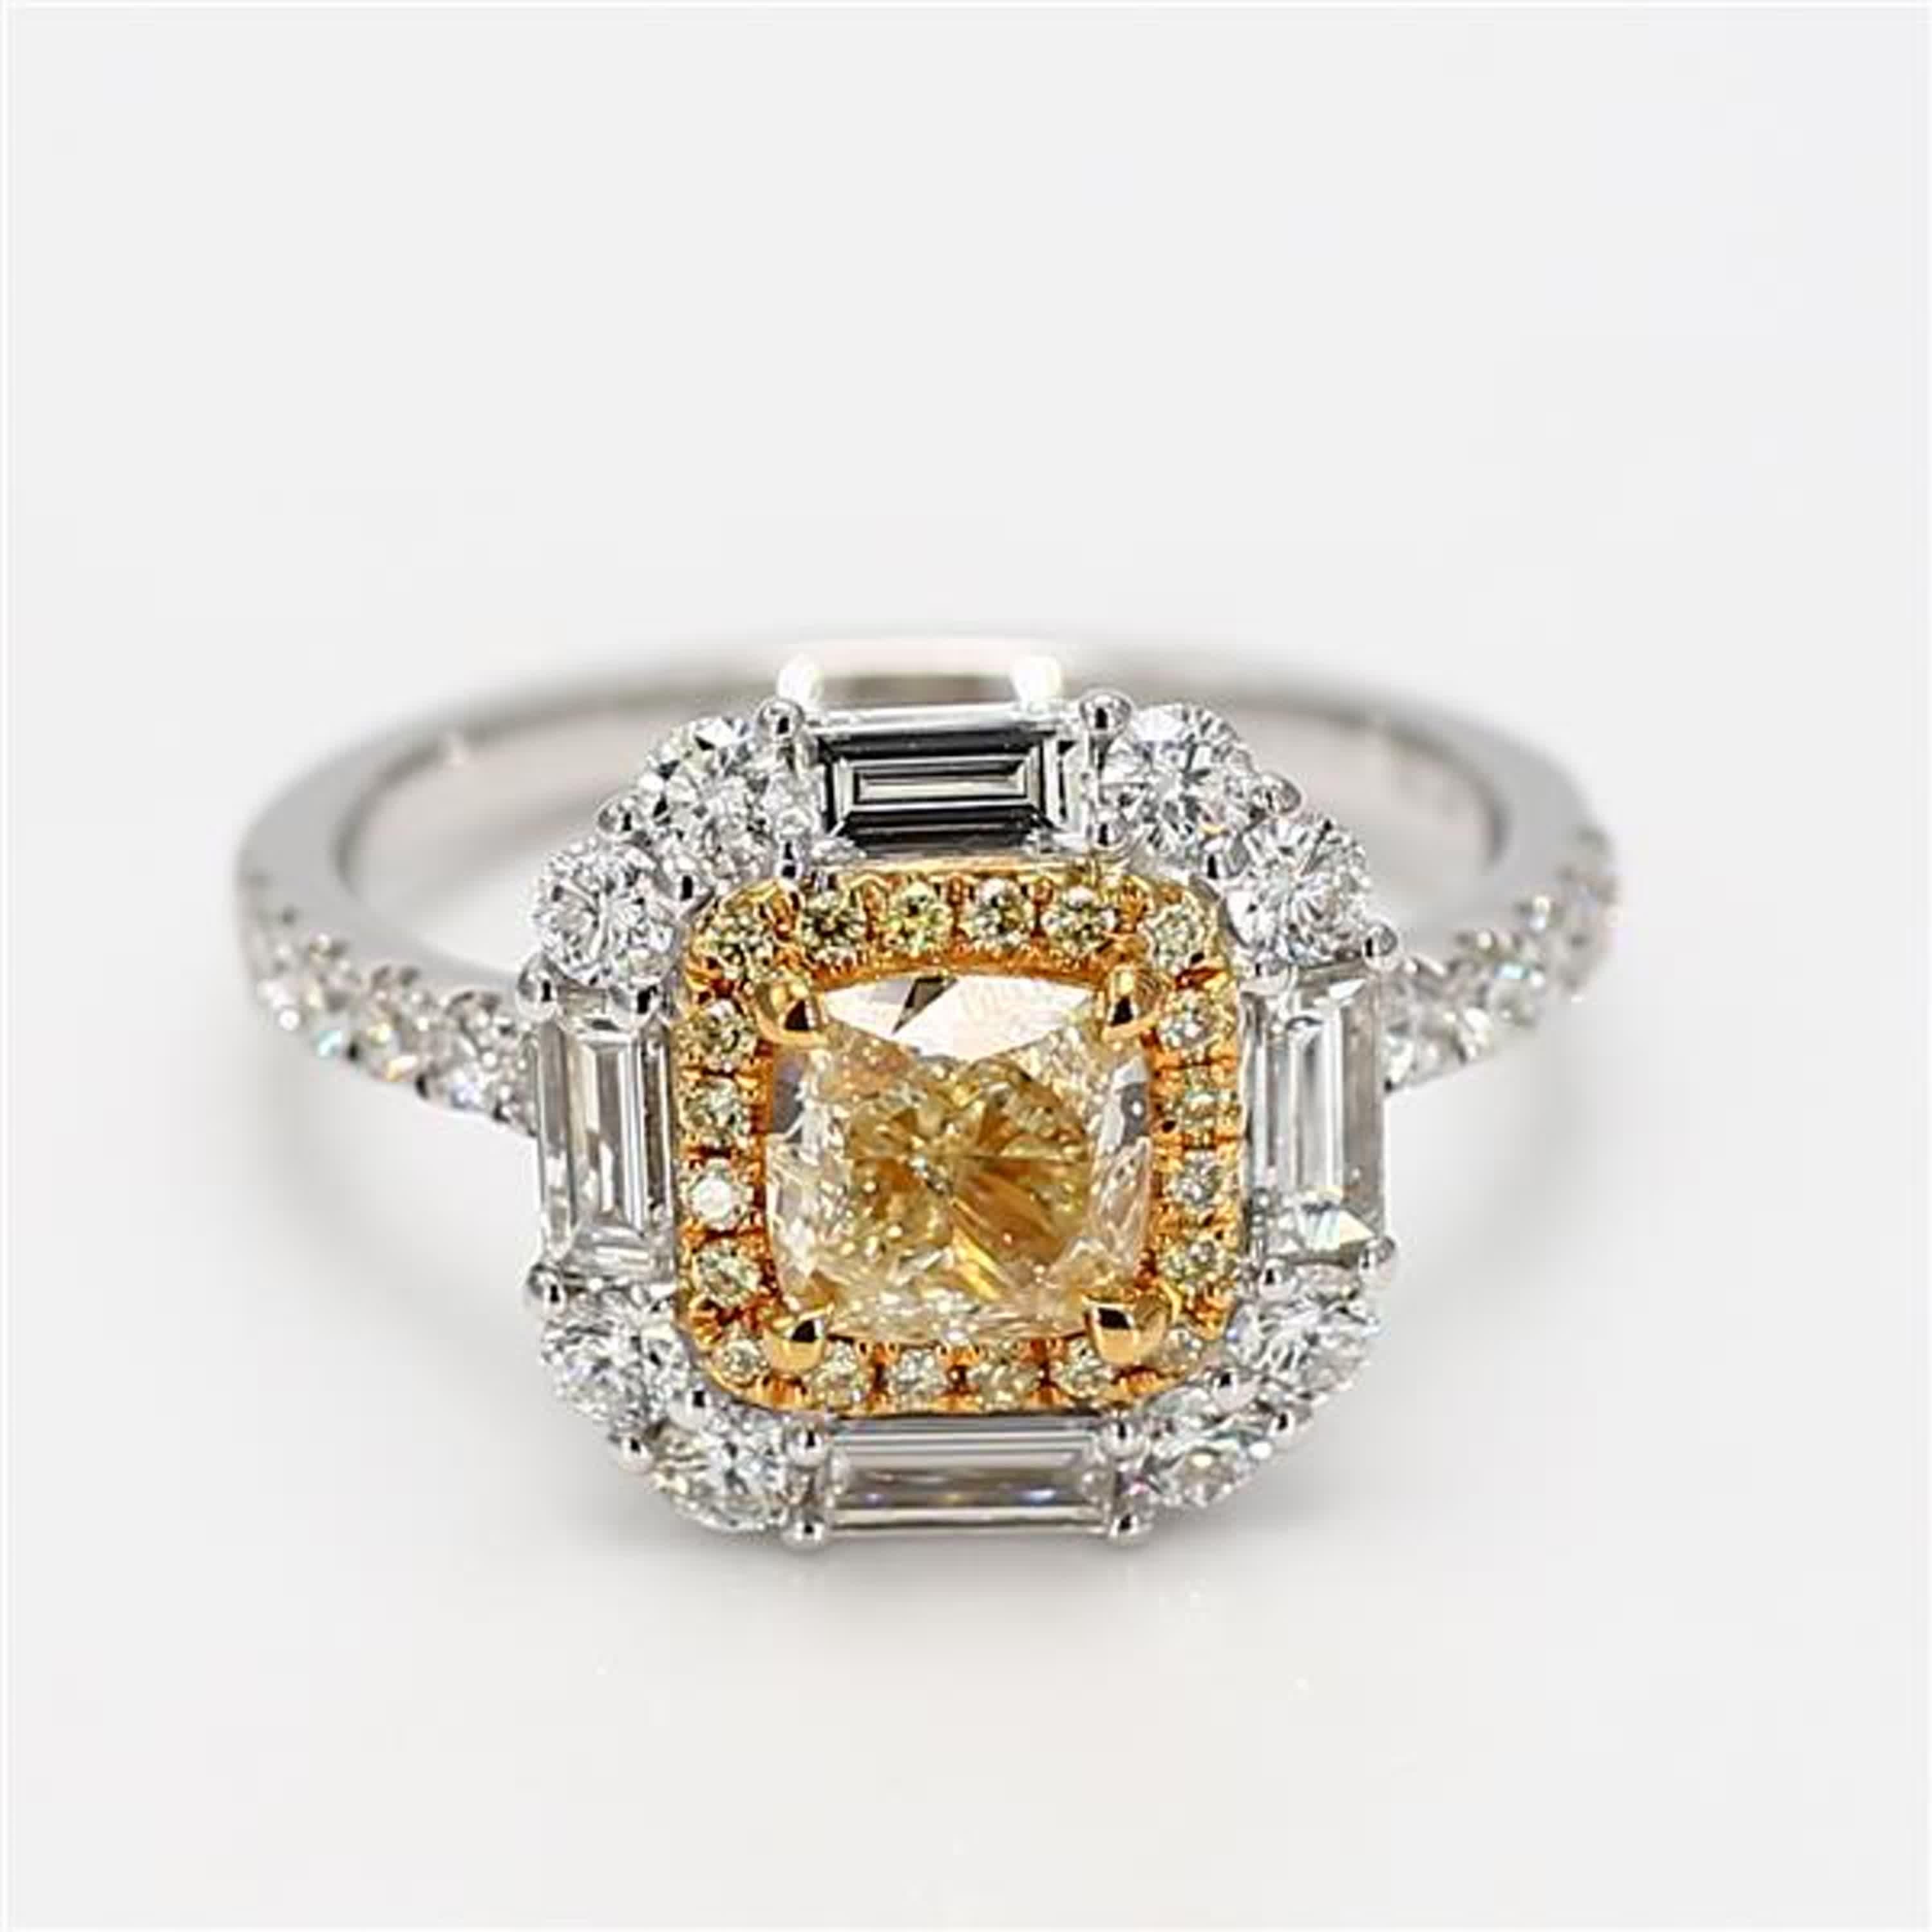 Der klassische GIA-zertifizierte Diamantring von RareGemWorld. Montiert in einer schönen Fassung aus 18 Karat Gelb- und Weißgold mit einem natürlichen gelben Diamanten im Kissenschliff. Der gelbe Diamant ist umgeben von weißen Diamanten im